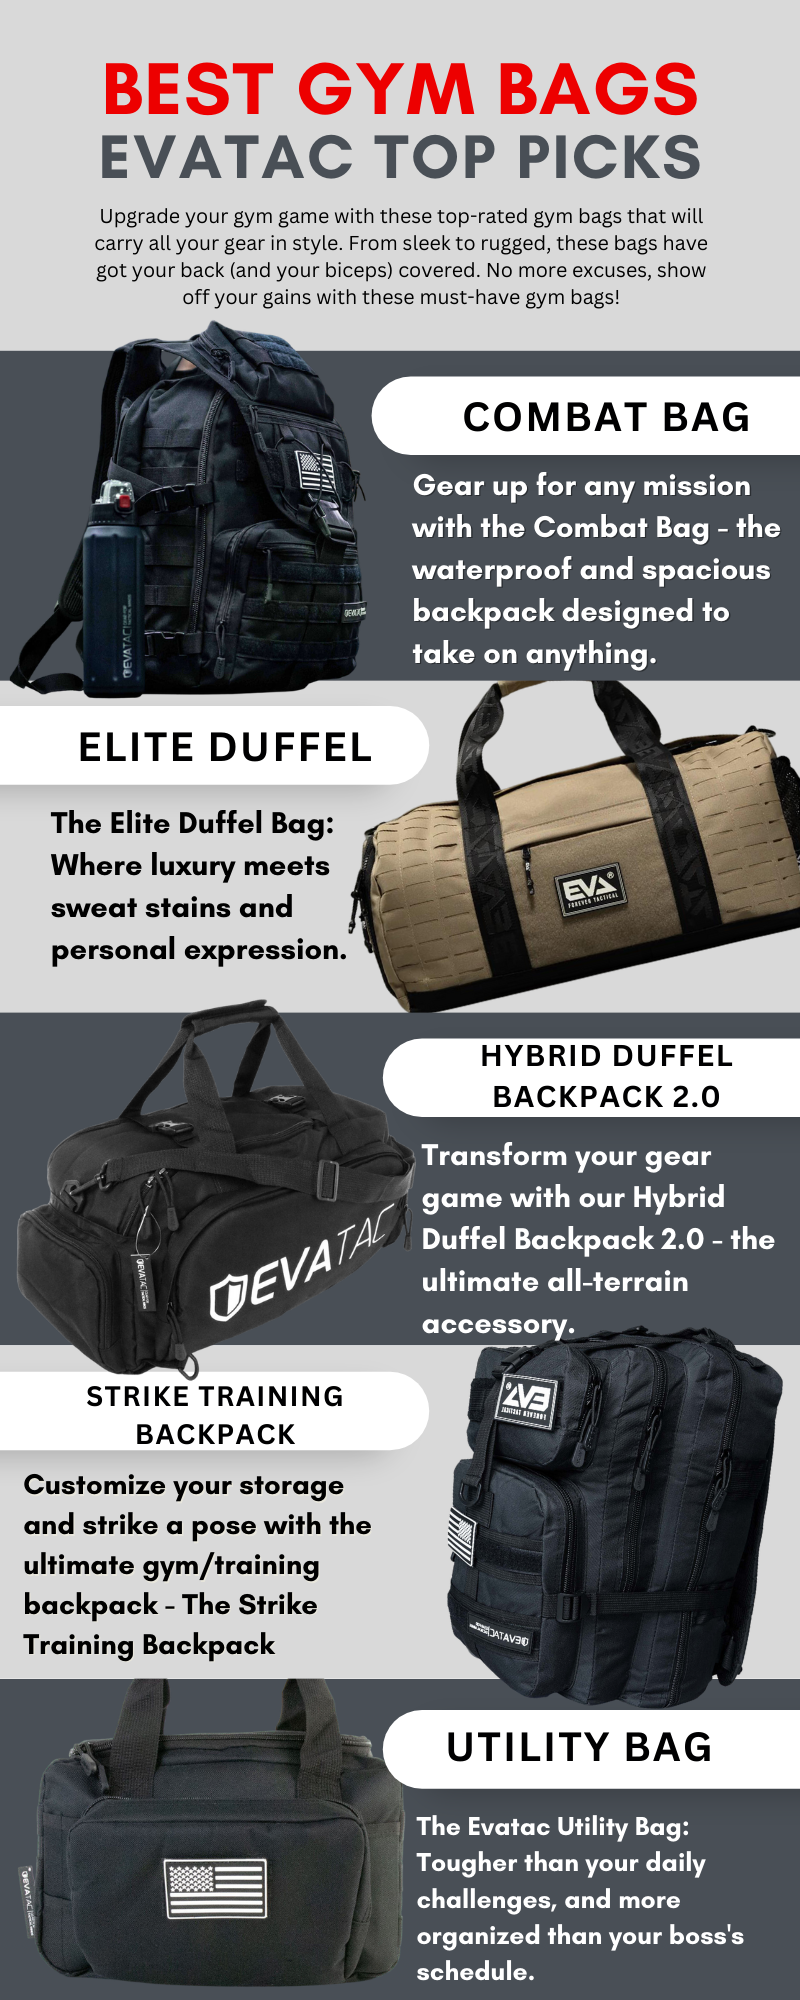 gym bags, backpacks